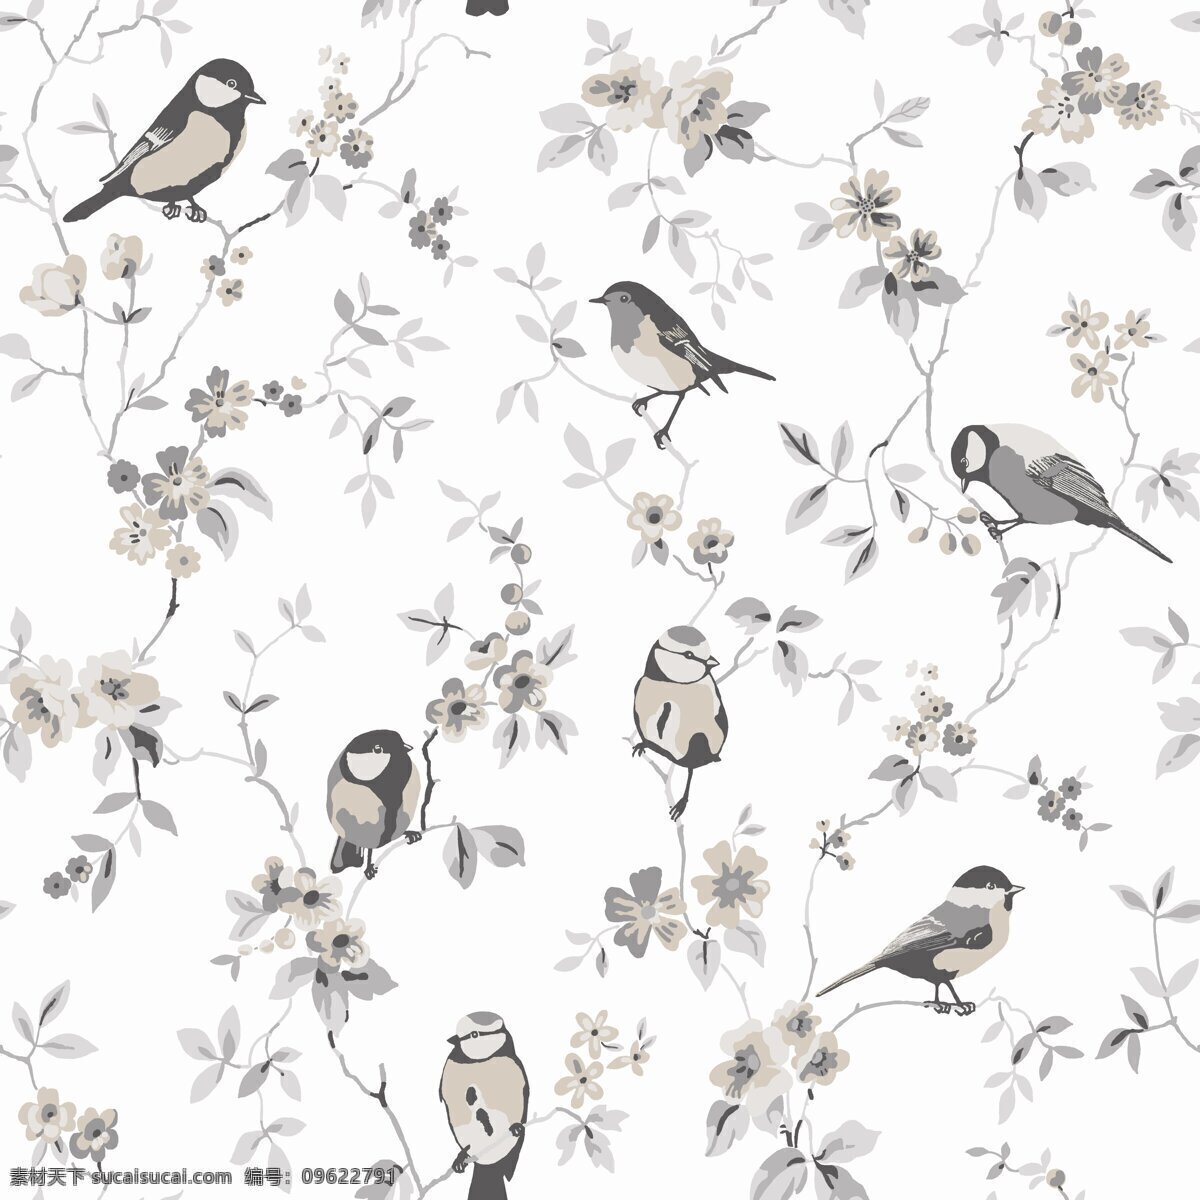 素雅 风格 粉 灰色 树枝 壁纸 图案 壁纸图案 浅色底纹 小鸟 植物元素